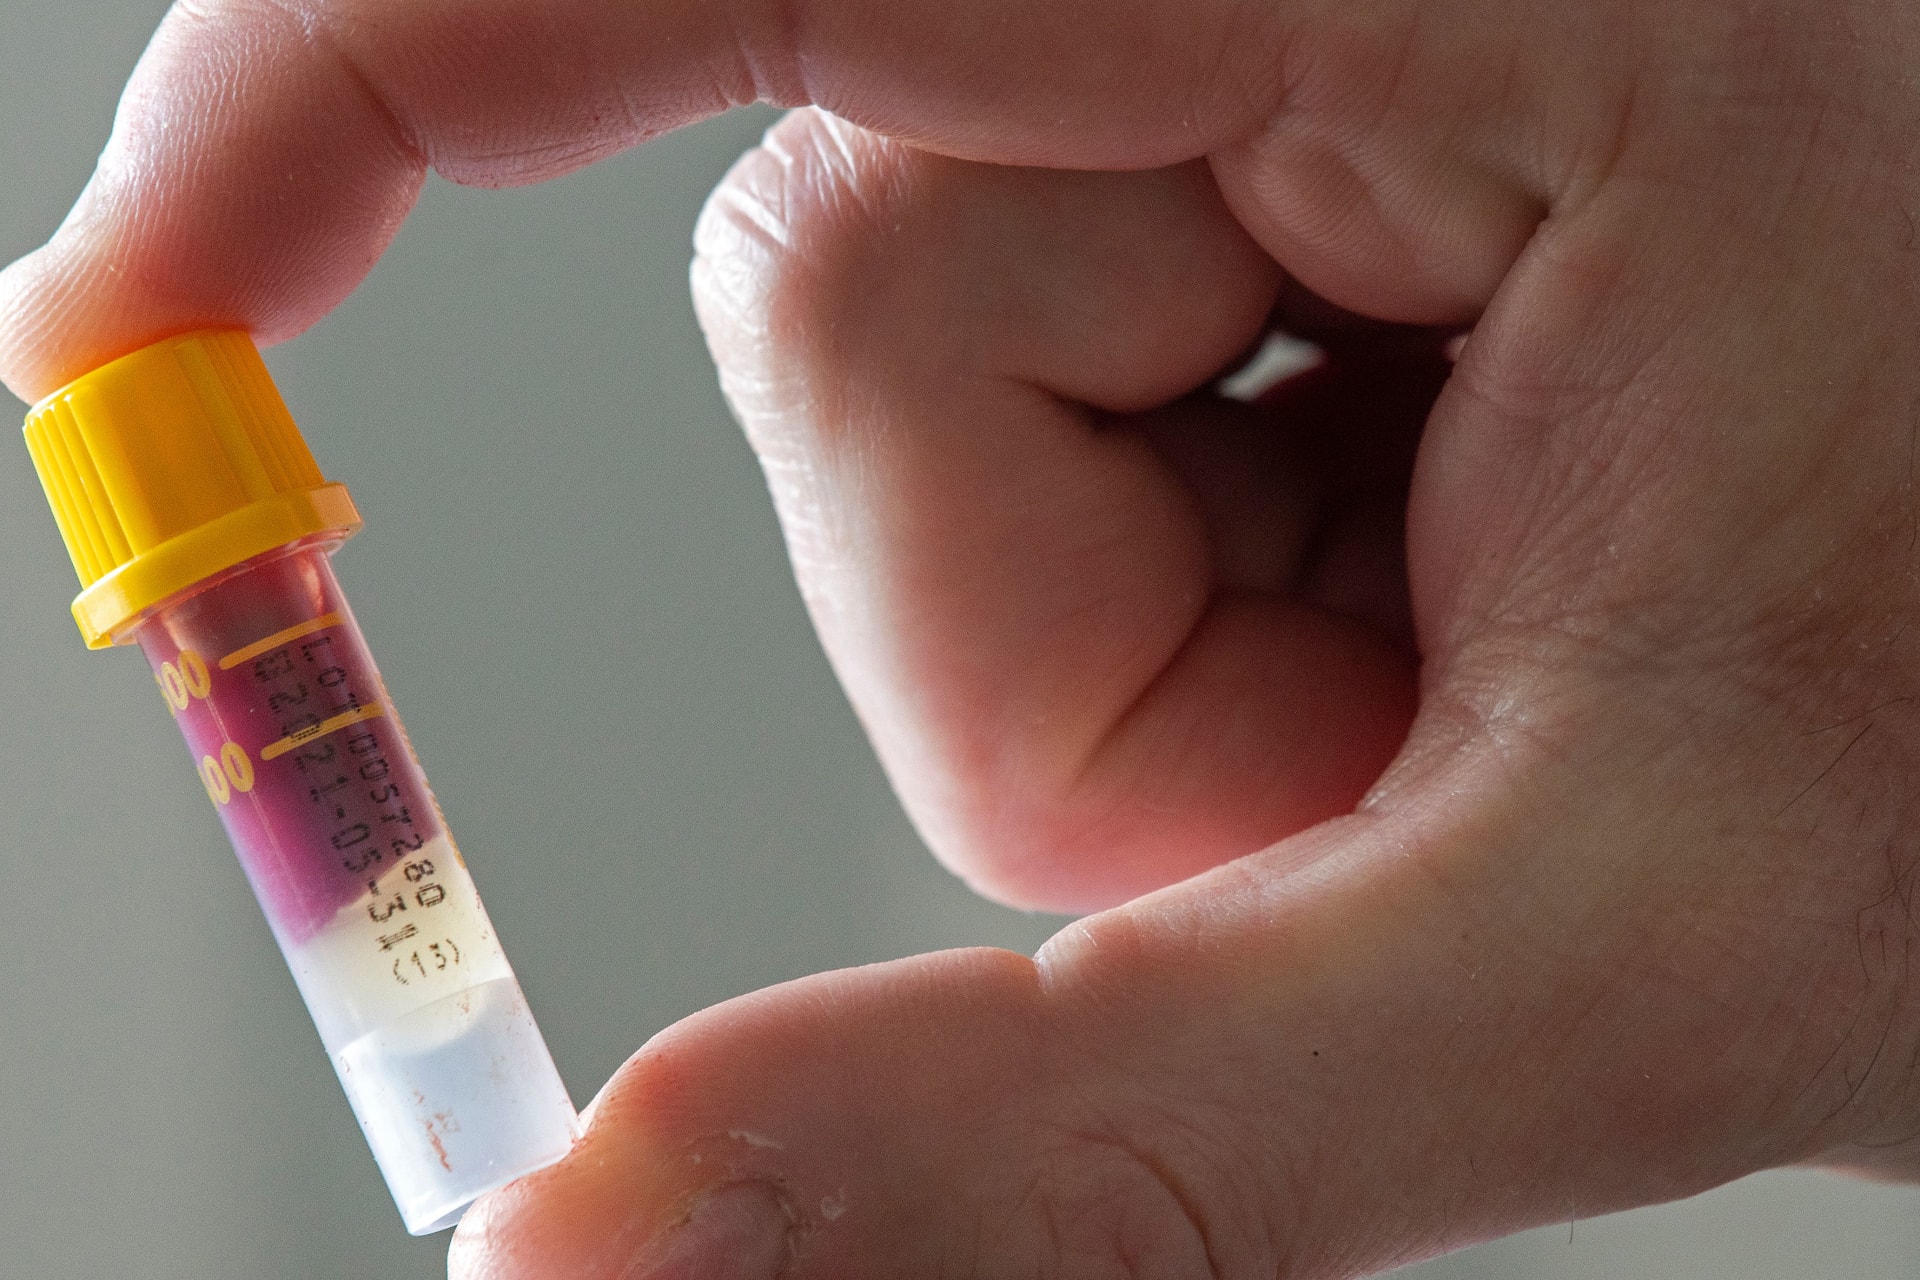 المملكة المتحدة تعتزم اجراء اختبار دم تجريبي قد يكشف عن 50 نوعاً من السرطان